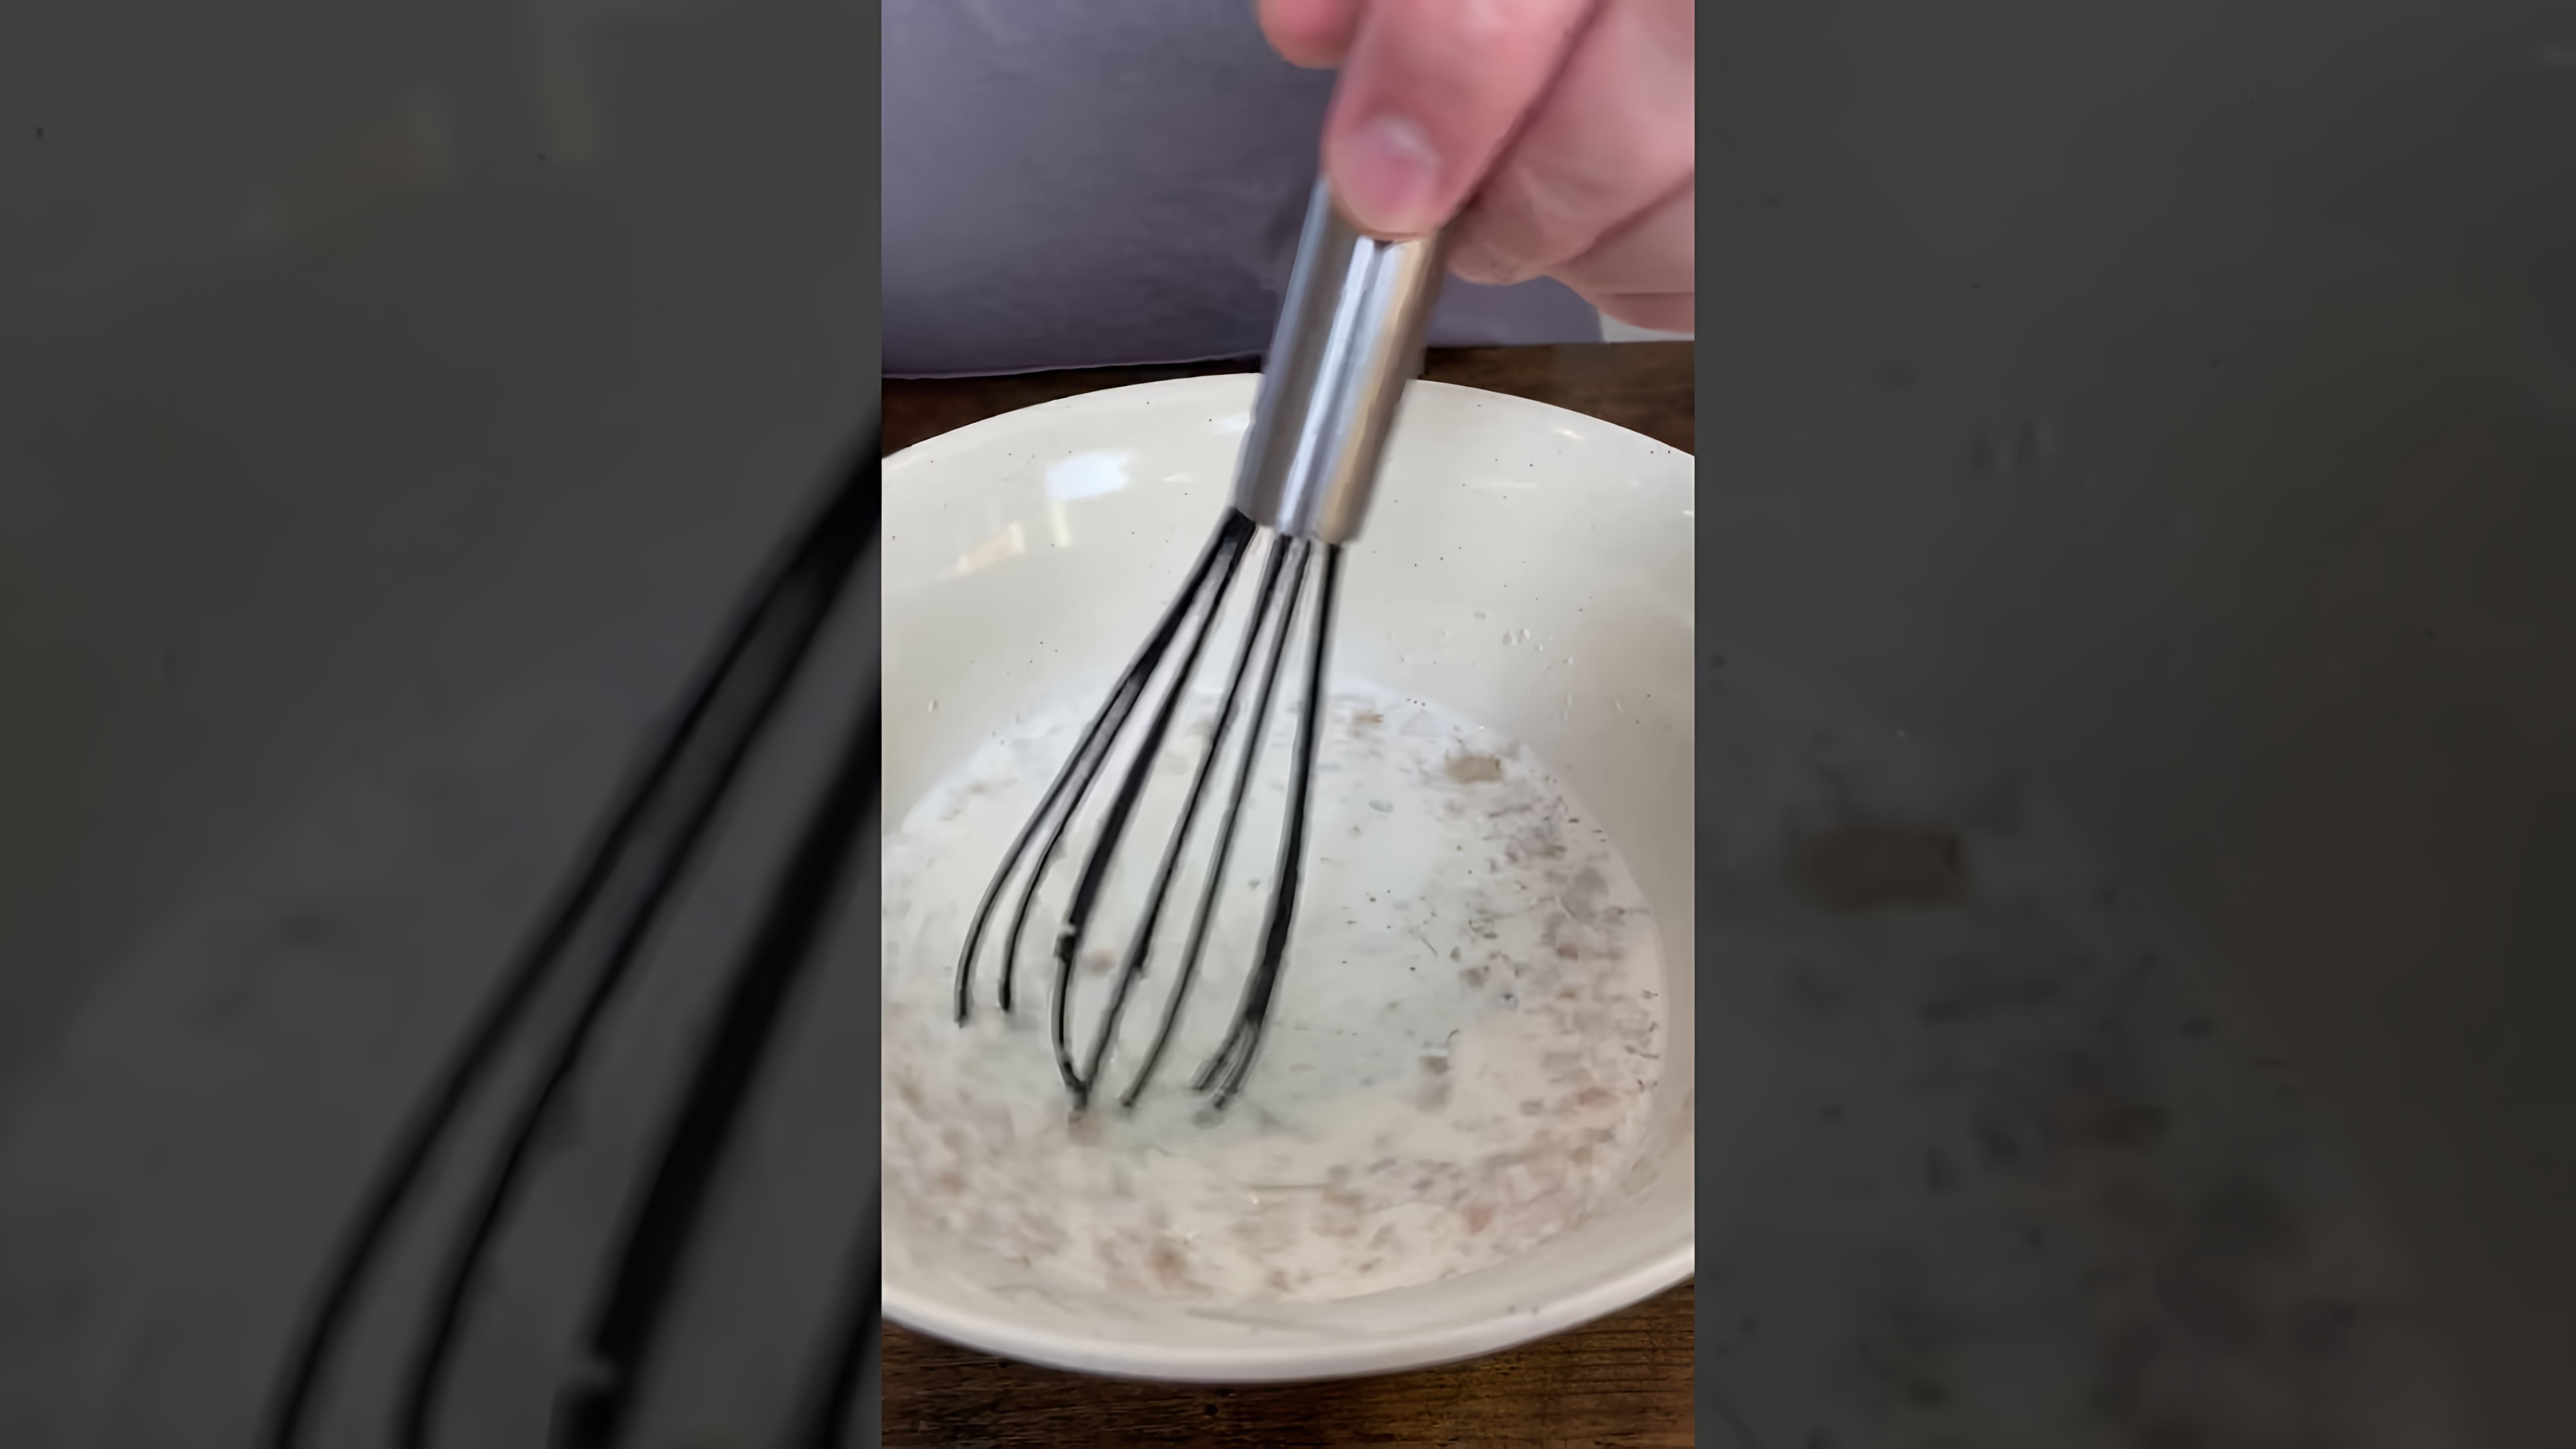 В этом видео мы видим, как готовится хачапури